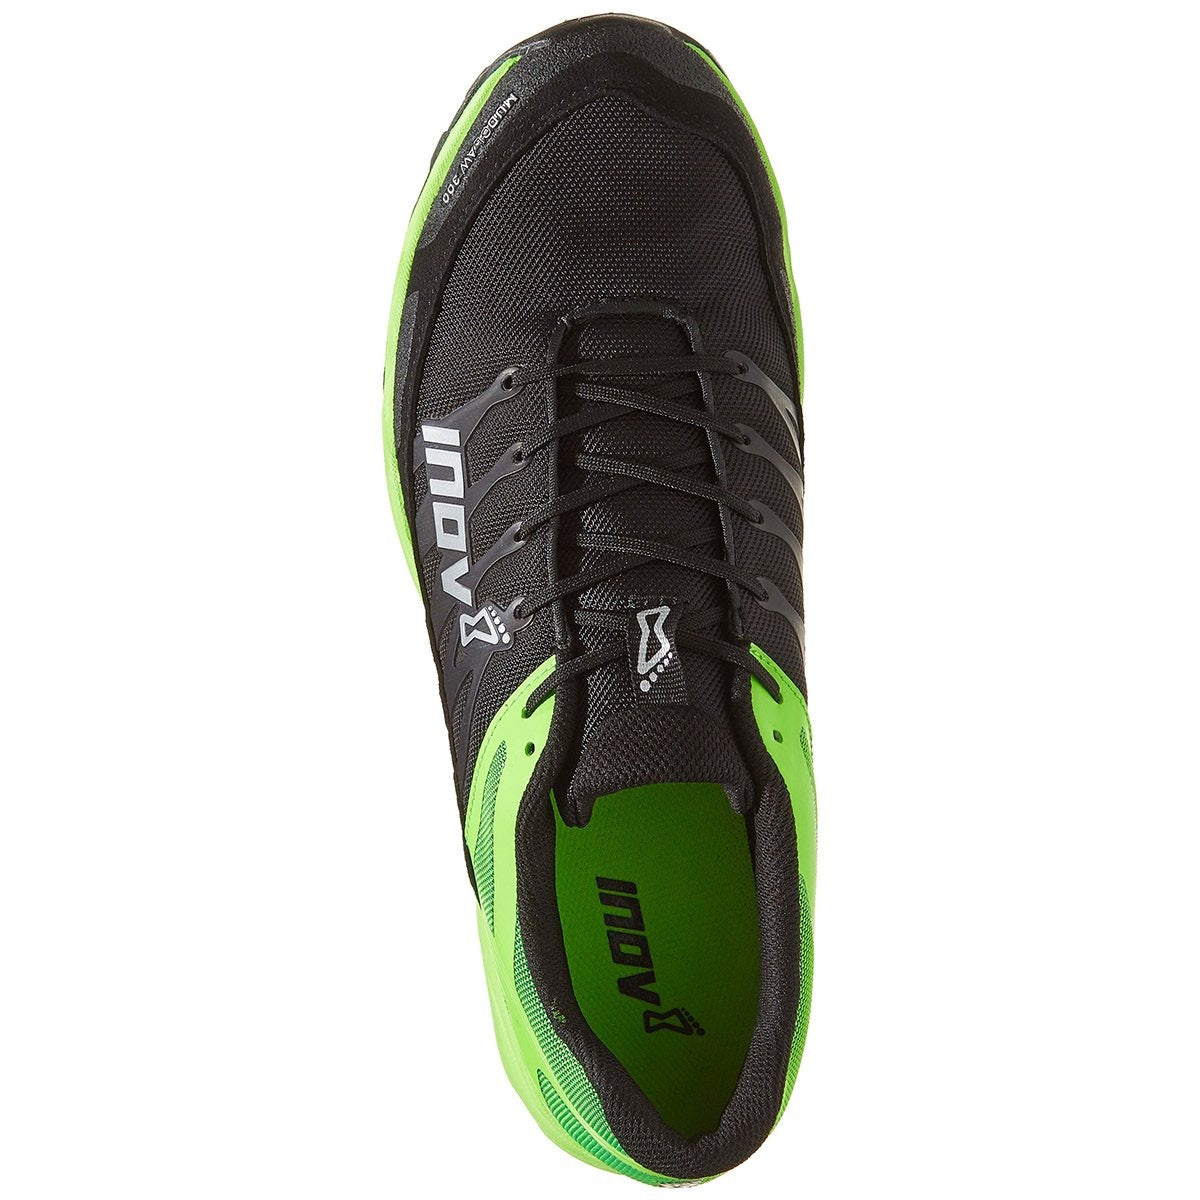 Inov-8 Mudclaw 300 in Inov-8 Mudclaw 300 by Inov-8 | Footwear - goHUNT Shop by GOHUNT | Inov-8 - GOHUNT Shop